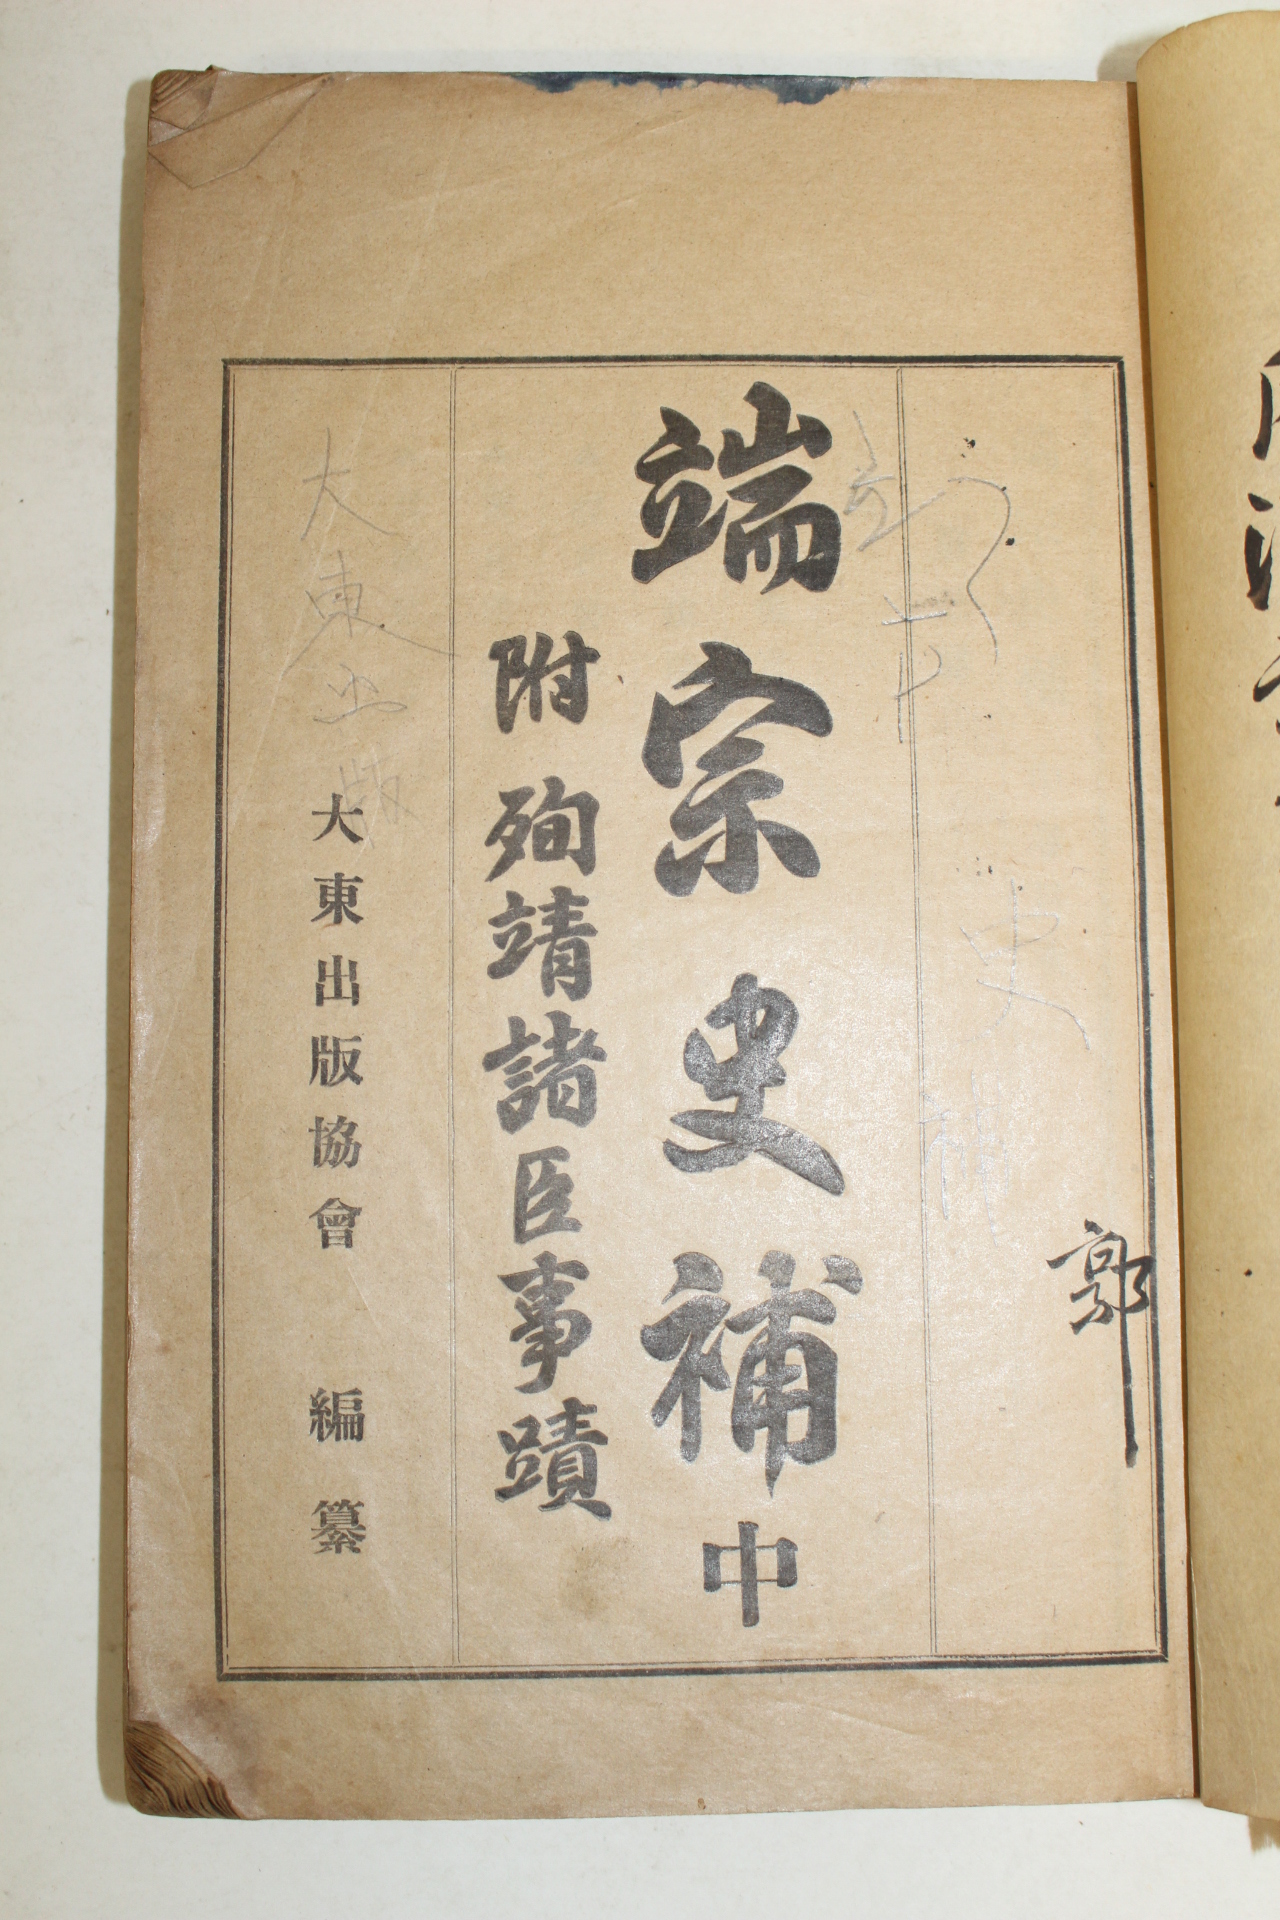 1930년 국한문혼용 단종사보(端宗史補) 중권 1책